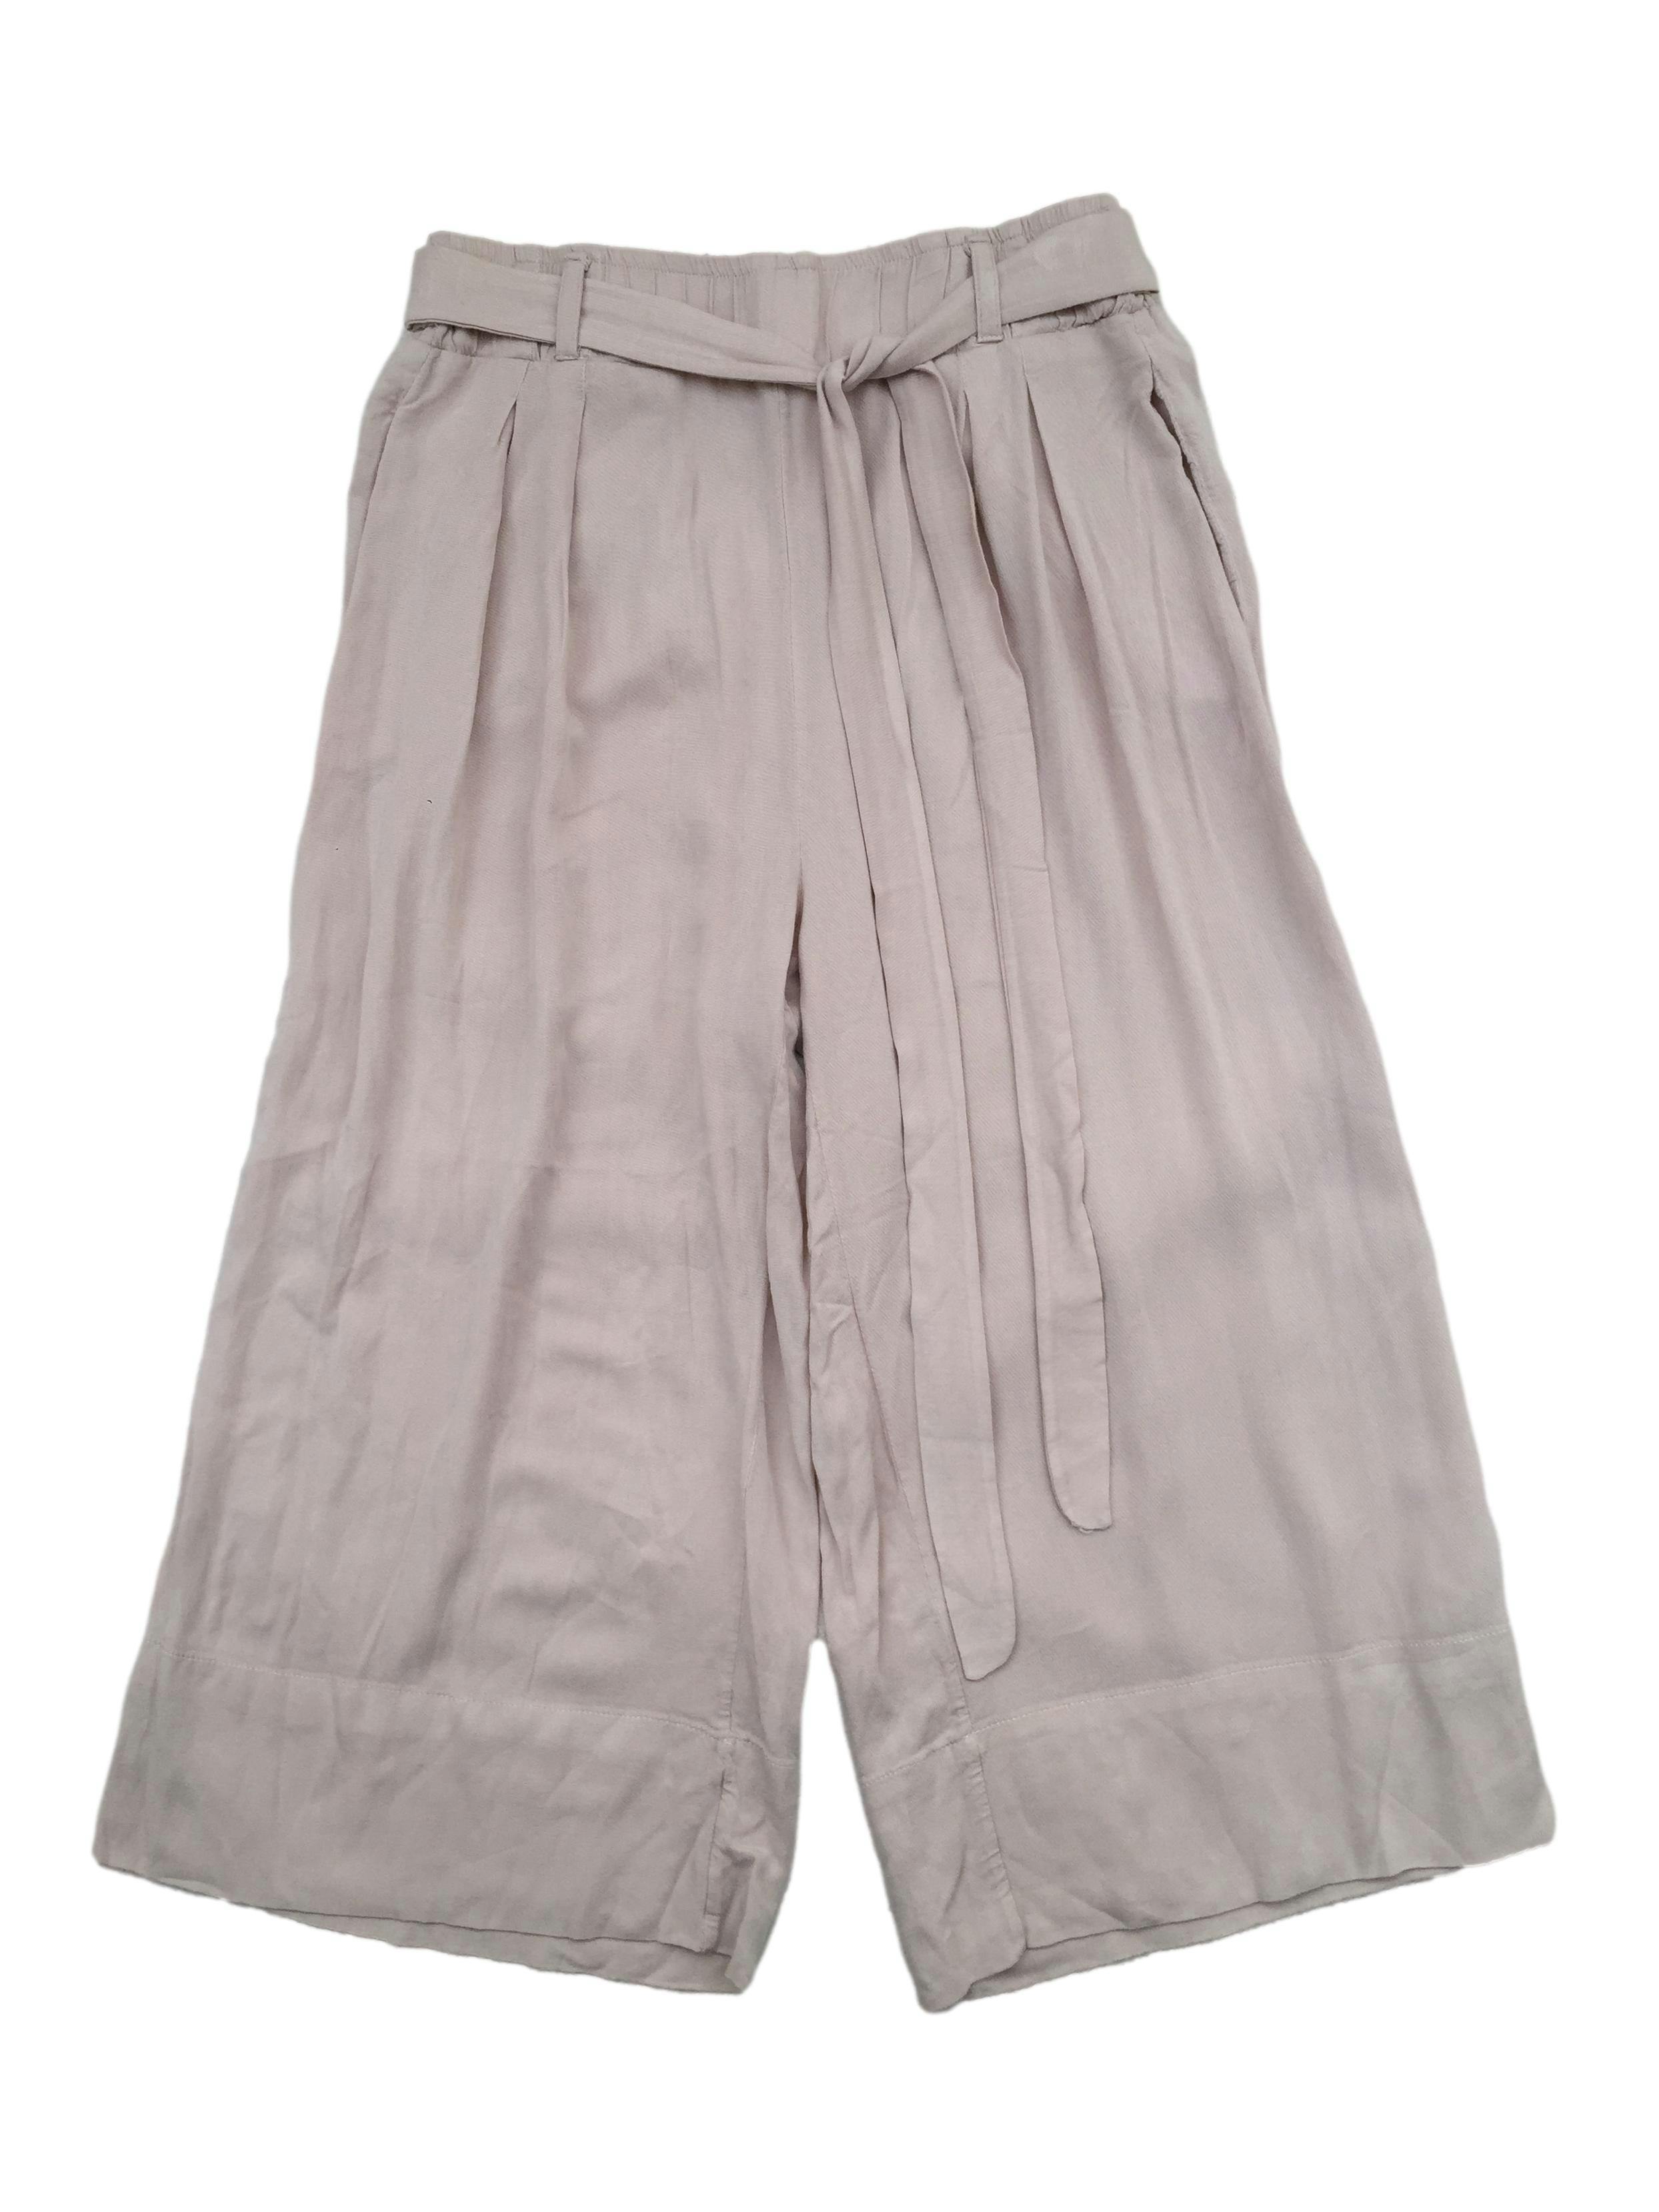 Pantalón culotte beige de tela fresca, pretina elástica con cintos y bolsillos. Cintura 66cm sin estirar, Largo 72cm.